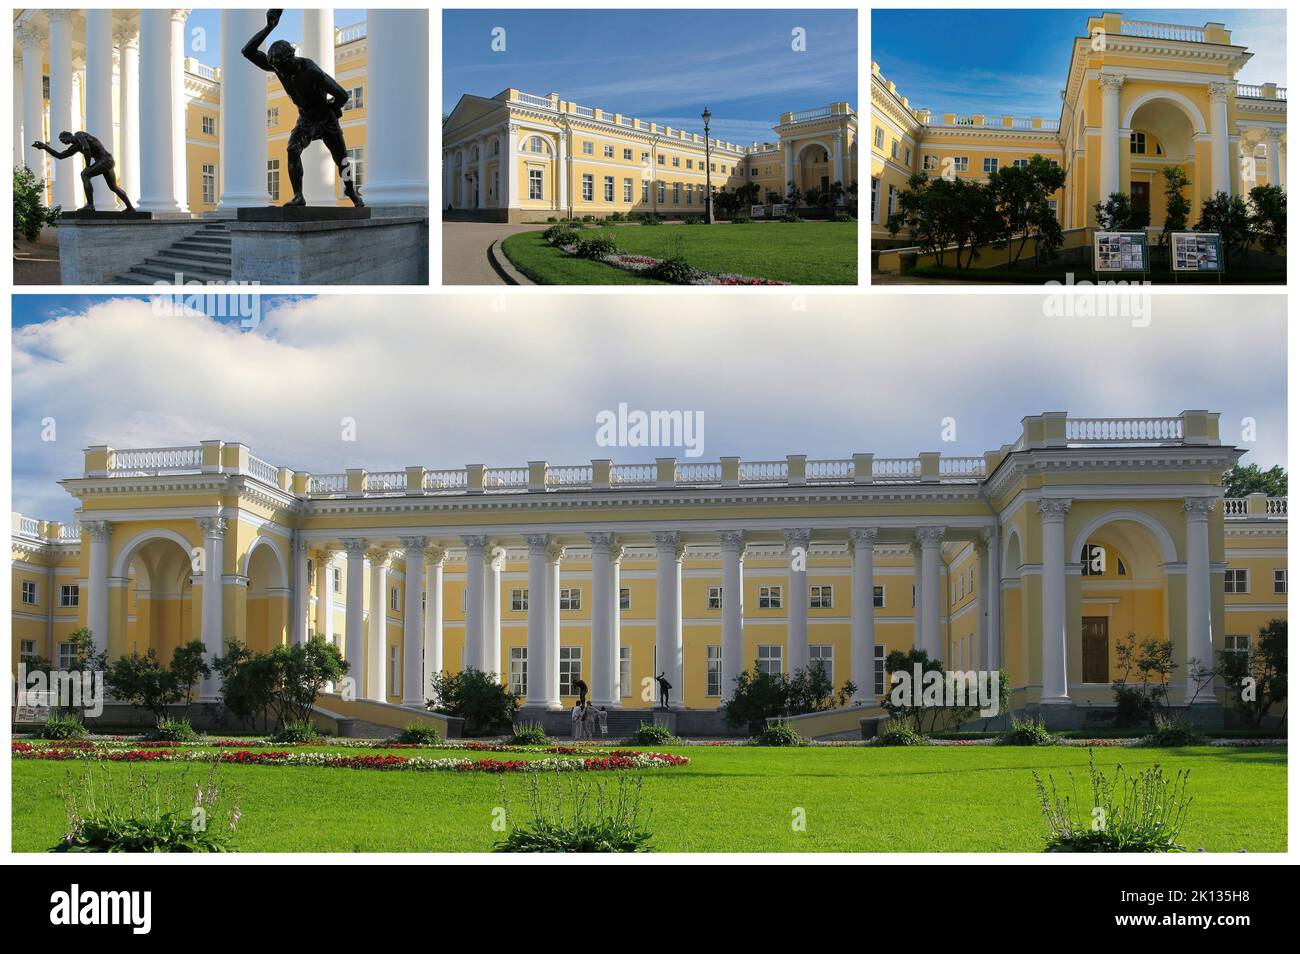 Der schöne Alexander-Palast, im klassischen Stil, in Puschkin (St. Petersburg) wurde von Katharina II. Für ihren Neffen Alexander I., den zukünftigen Kaiser, erbaut Stockfoto